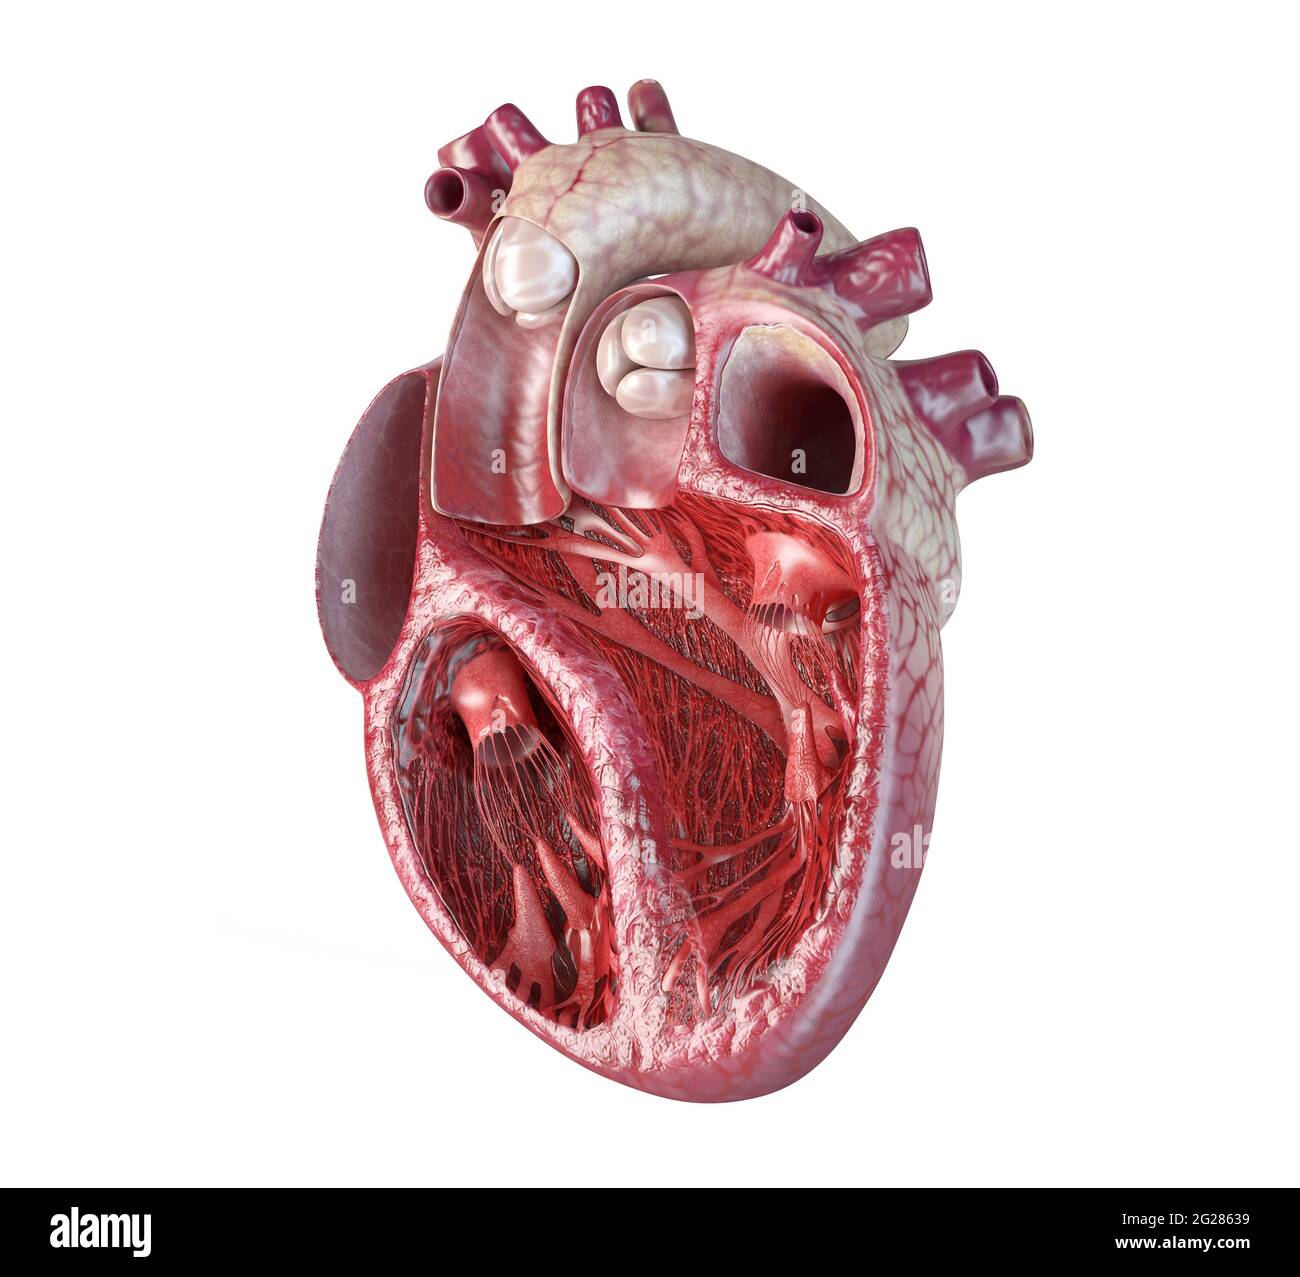 Sezione trasversale del cuore umano con struttura interna dettagliata. Foto Stock